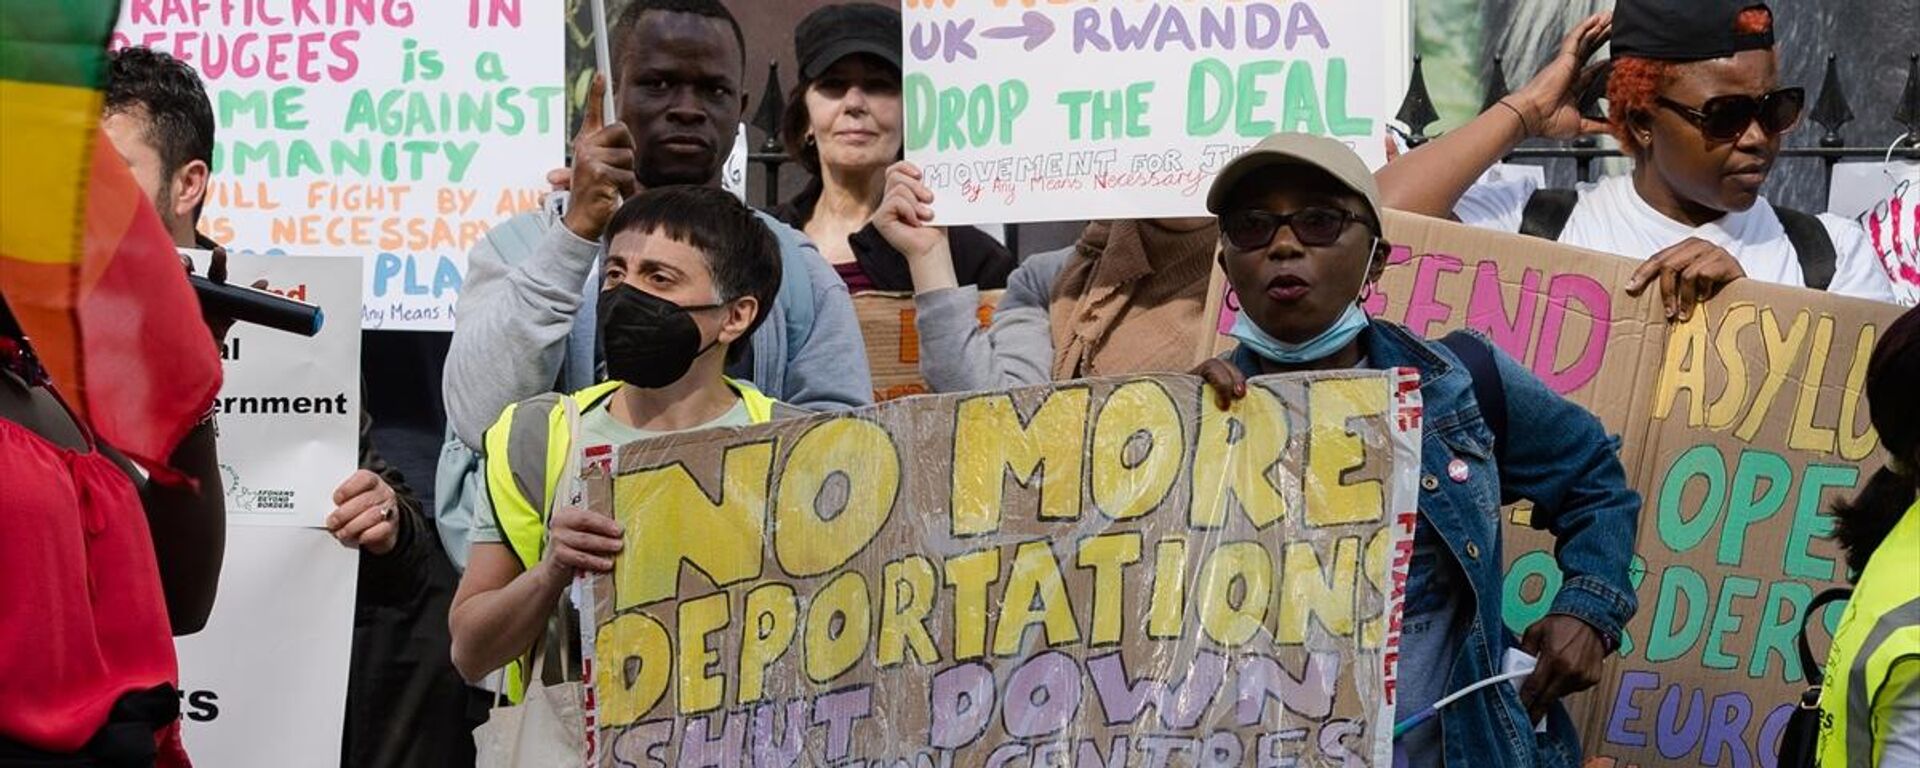 İngiltere'nin düzensiz göçmenleri Ruanda'ya gönderme planı protesto edildi - Sputnik Türkiye, 1920, 29.06.2023